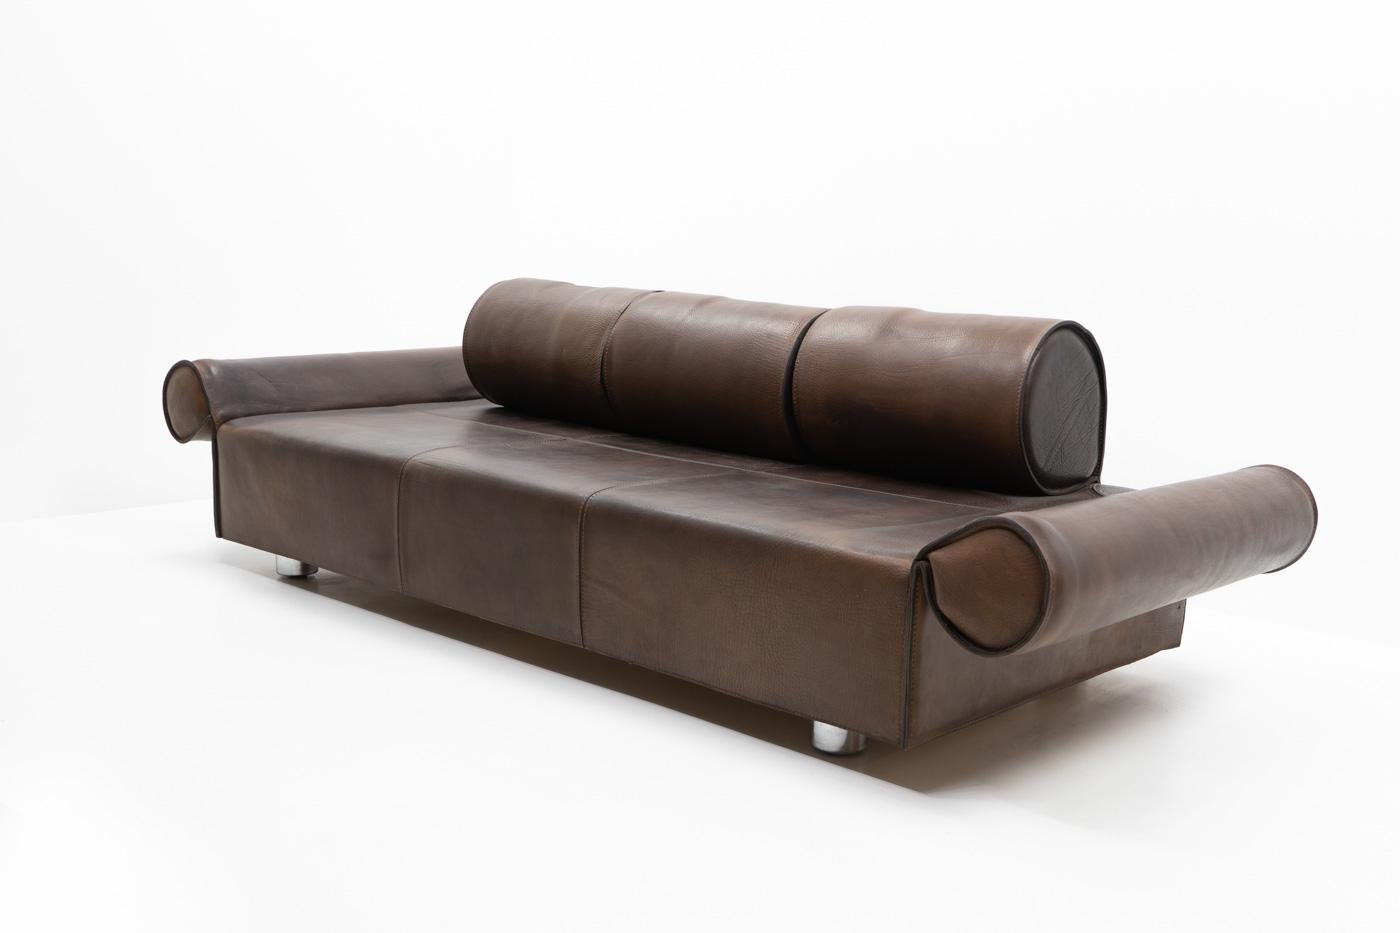 Late 20th Century Italian Design Marzio Cecchi Three-seater Sofa in Brown Buffalo Leather, 1970s For Sale